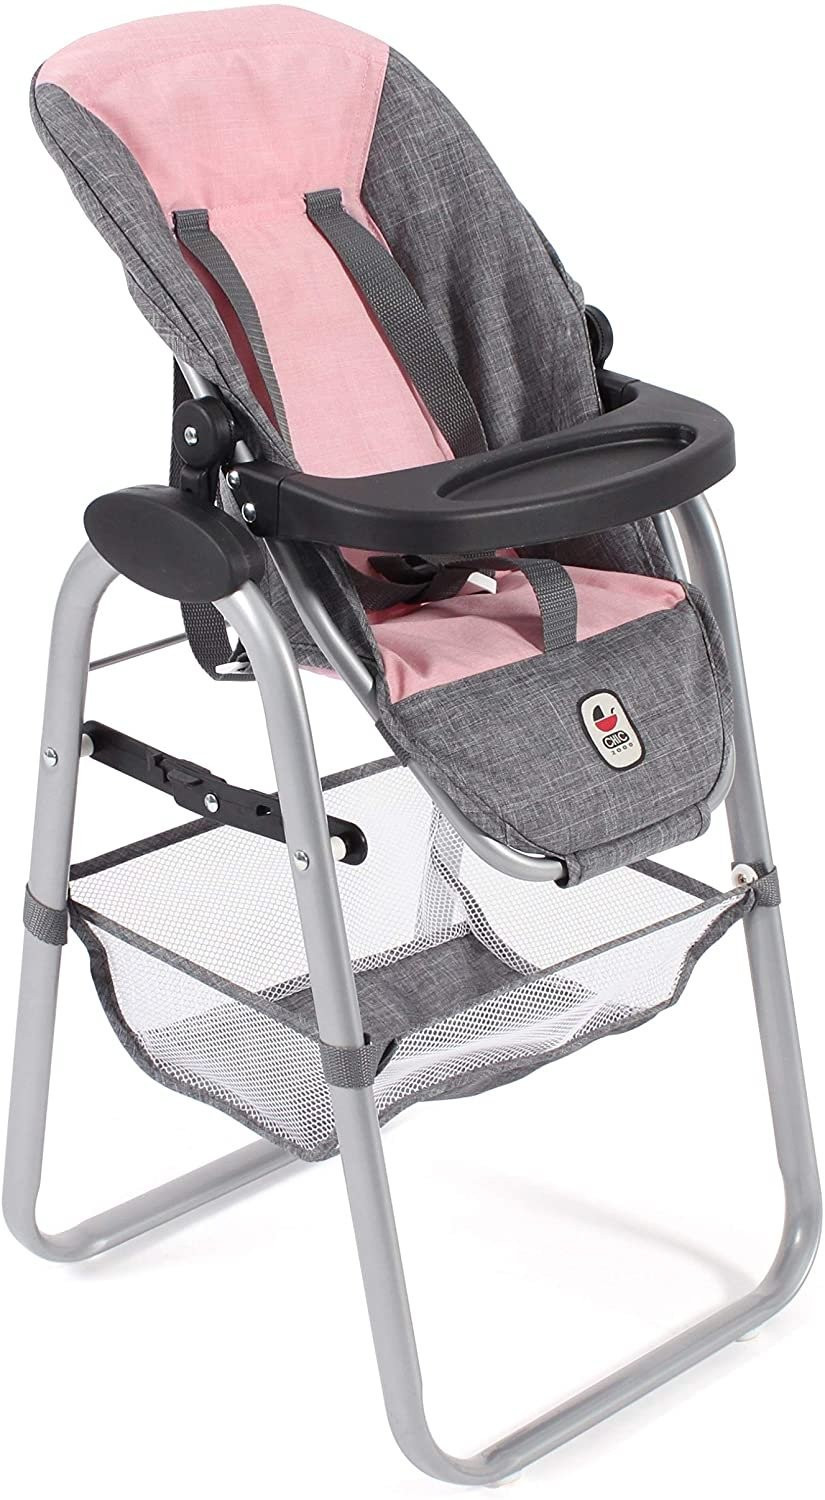 Krzesełko do karmienia lalek - różowo szare - Bayer Chic 655 15